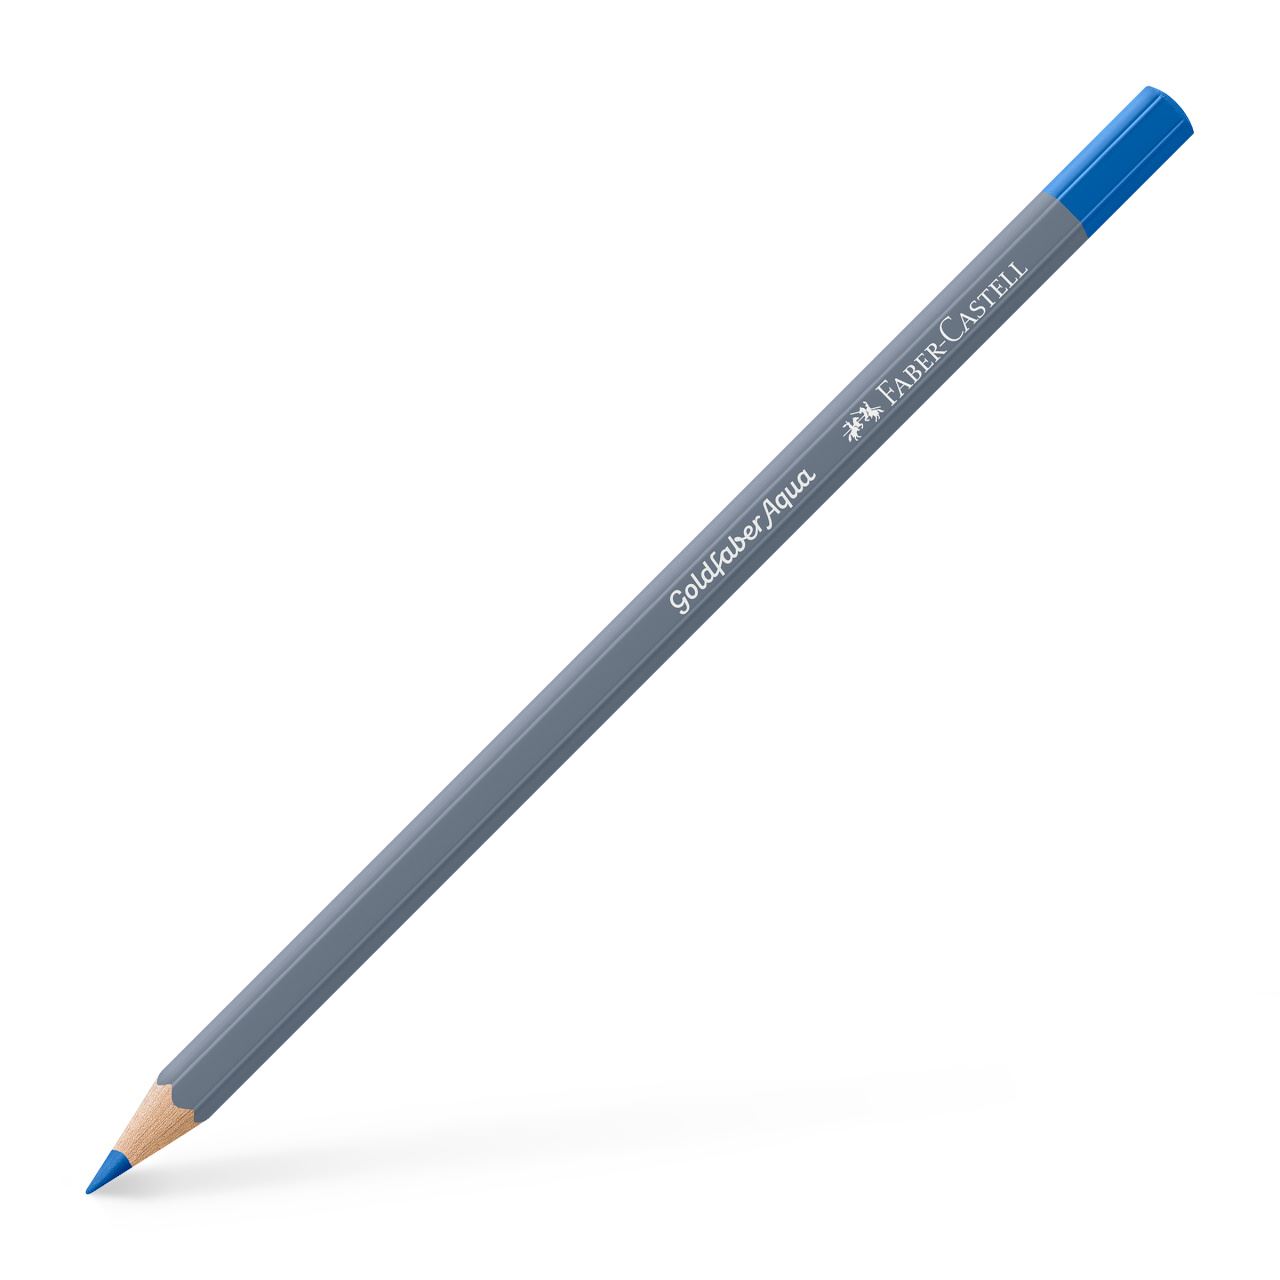 Faber-Castell - Goldfaber Aqua watercolour pencil, cobalt blue